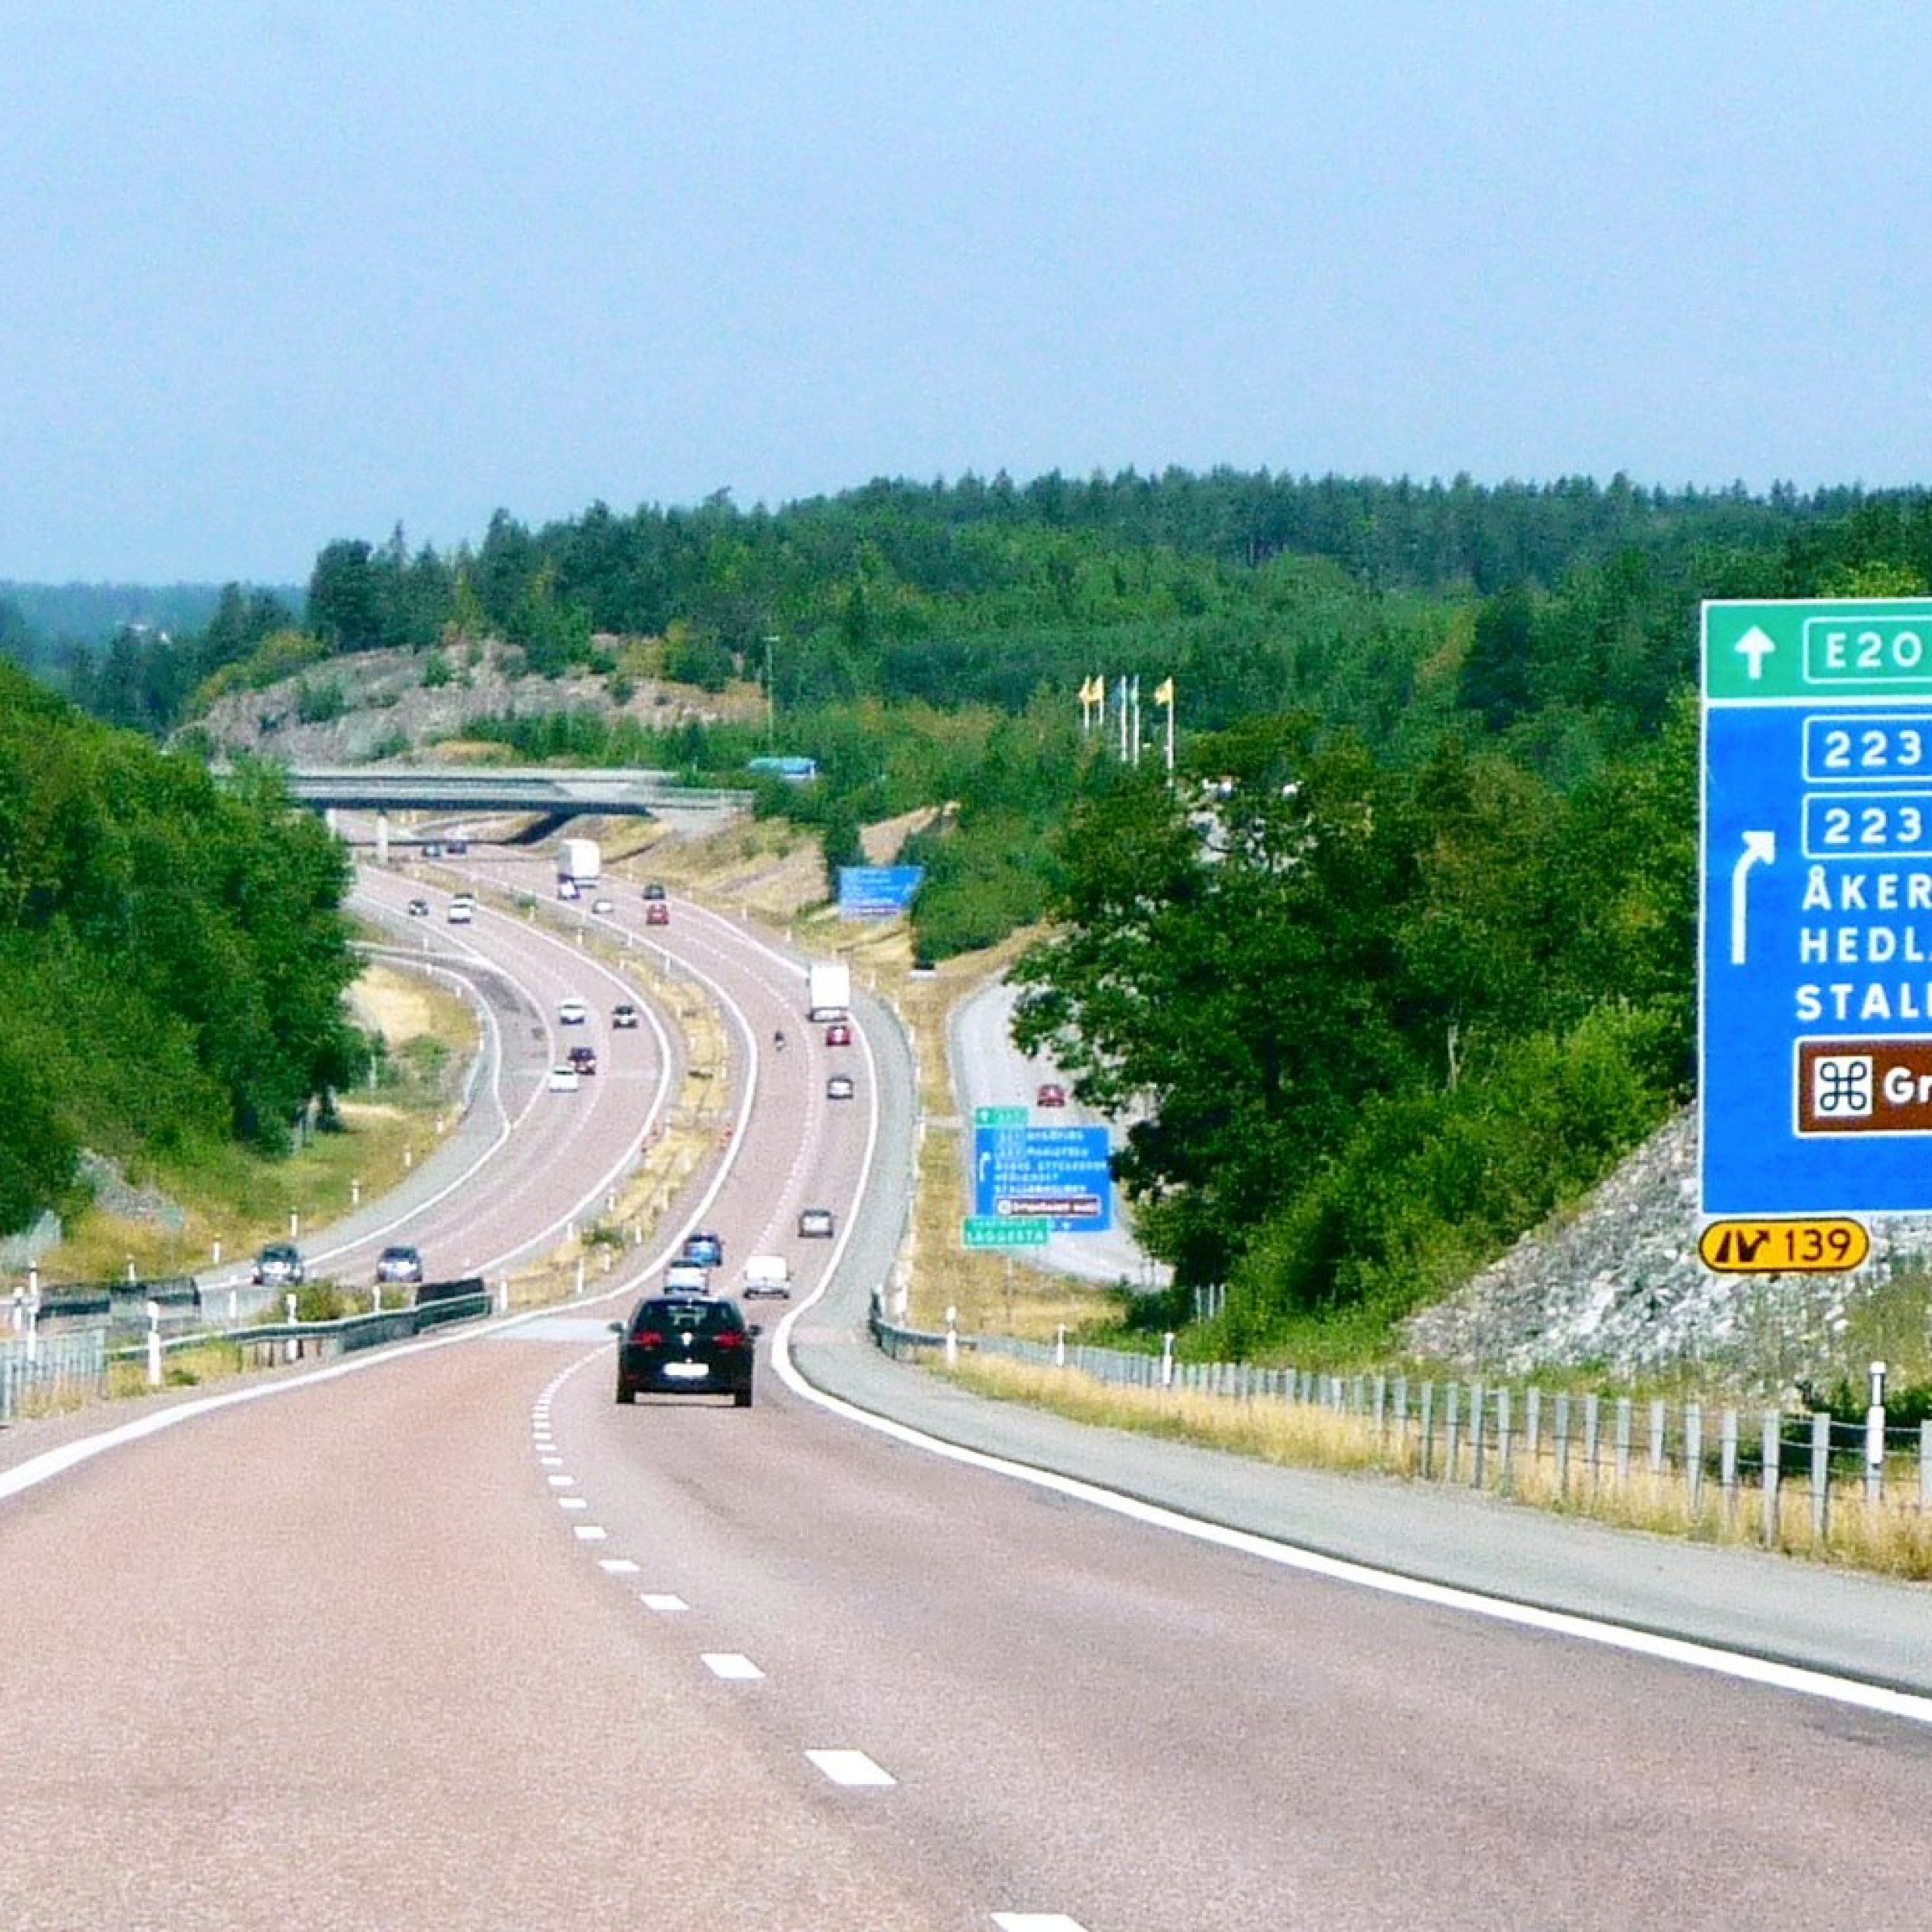 Ödesfrågan: Håller det svenska vägnätet för autonoma bilar?